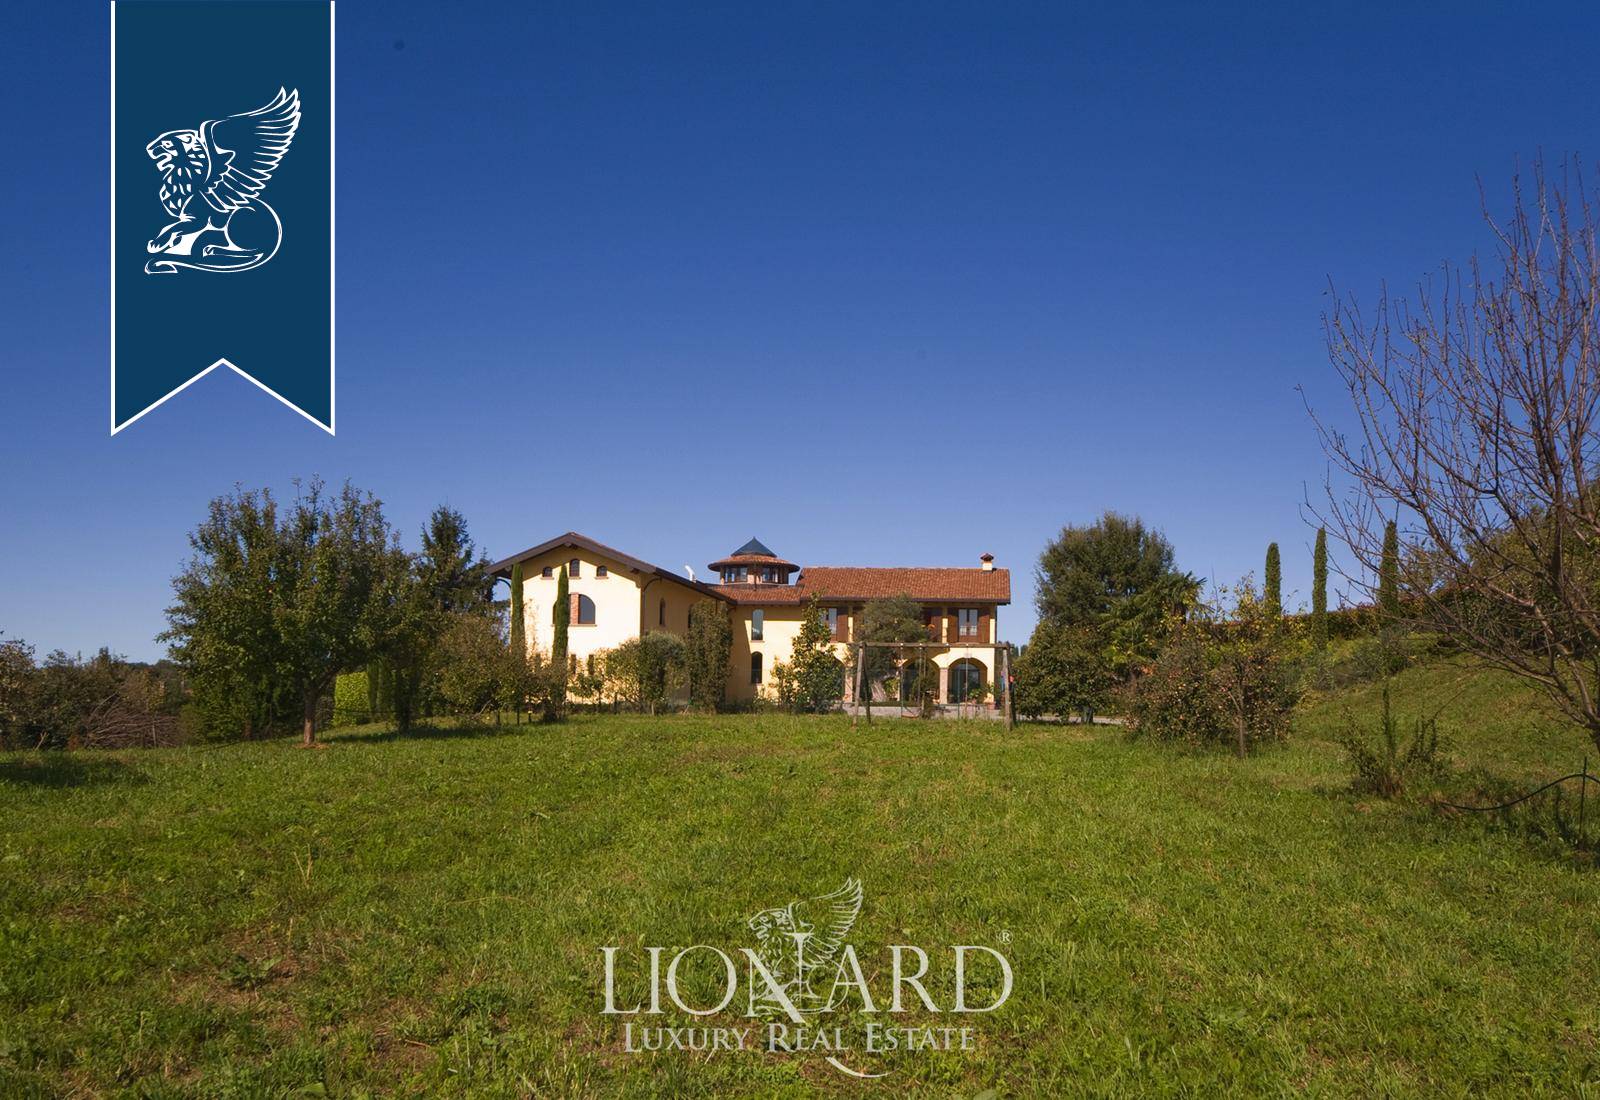 Villa in Vendita a Montano Lucino: 0 locali, 1200 mq - Foto 8